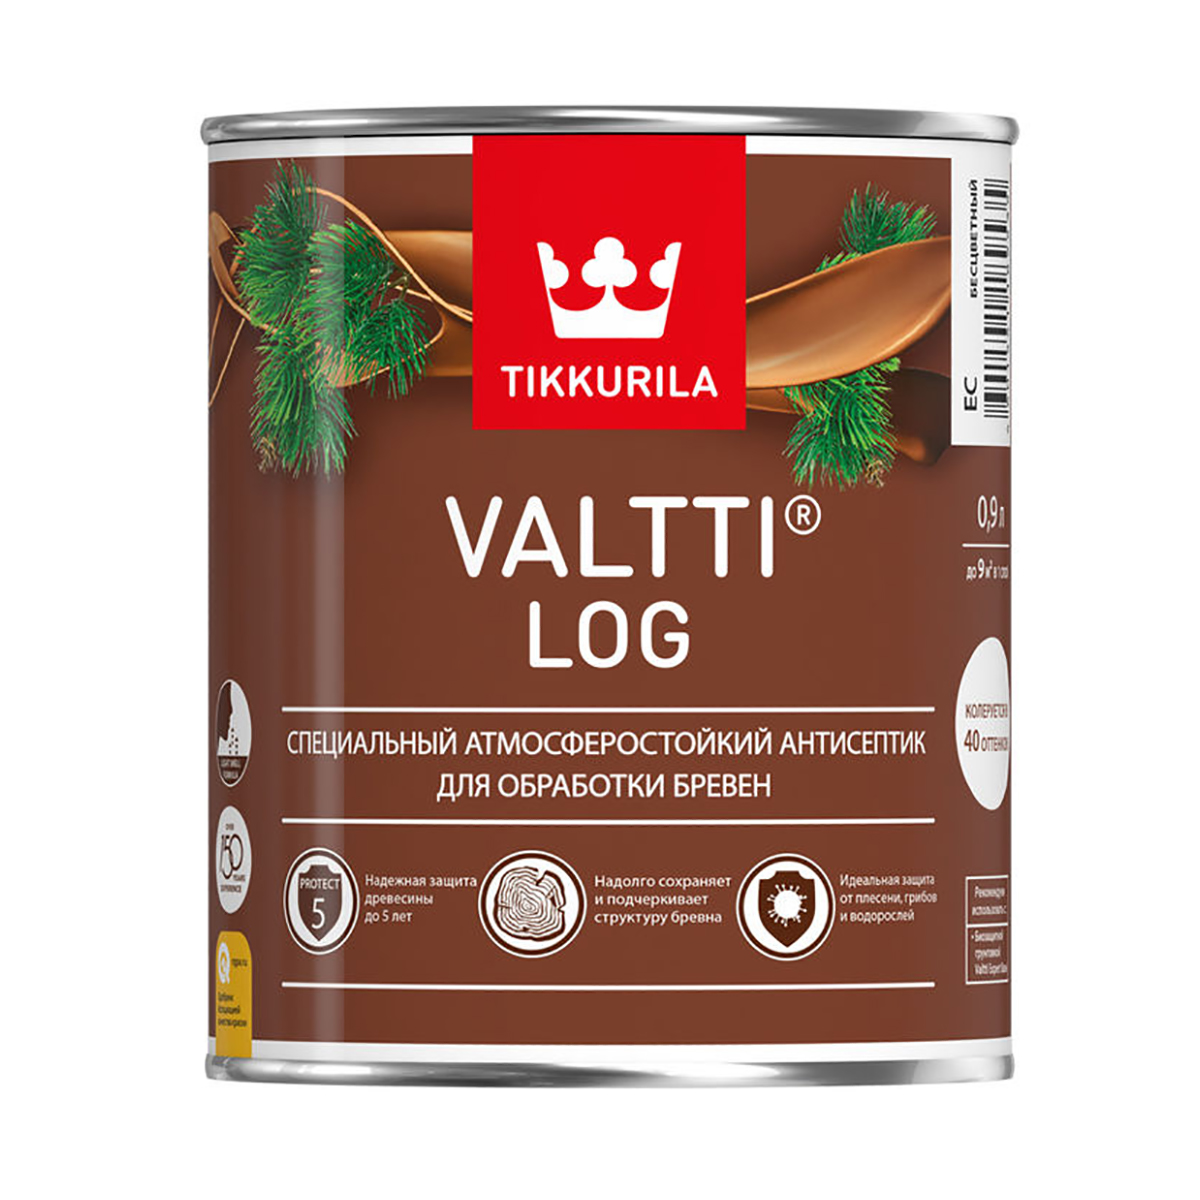 Валтти log  орегон  0,9 л   антисептик для дерева TIKKURILA